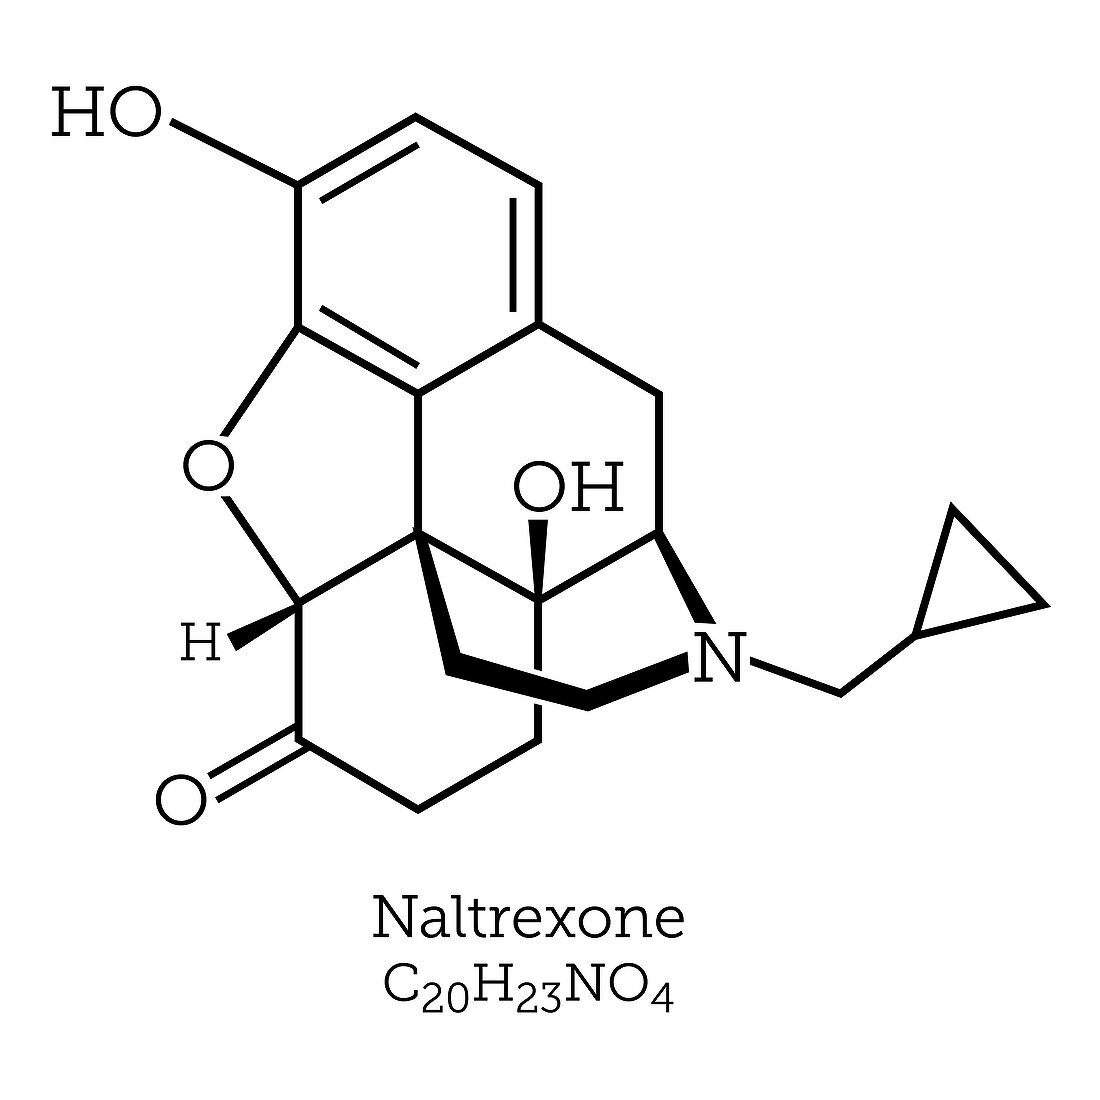 Naltrexone, An Opioid Antagonist